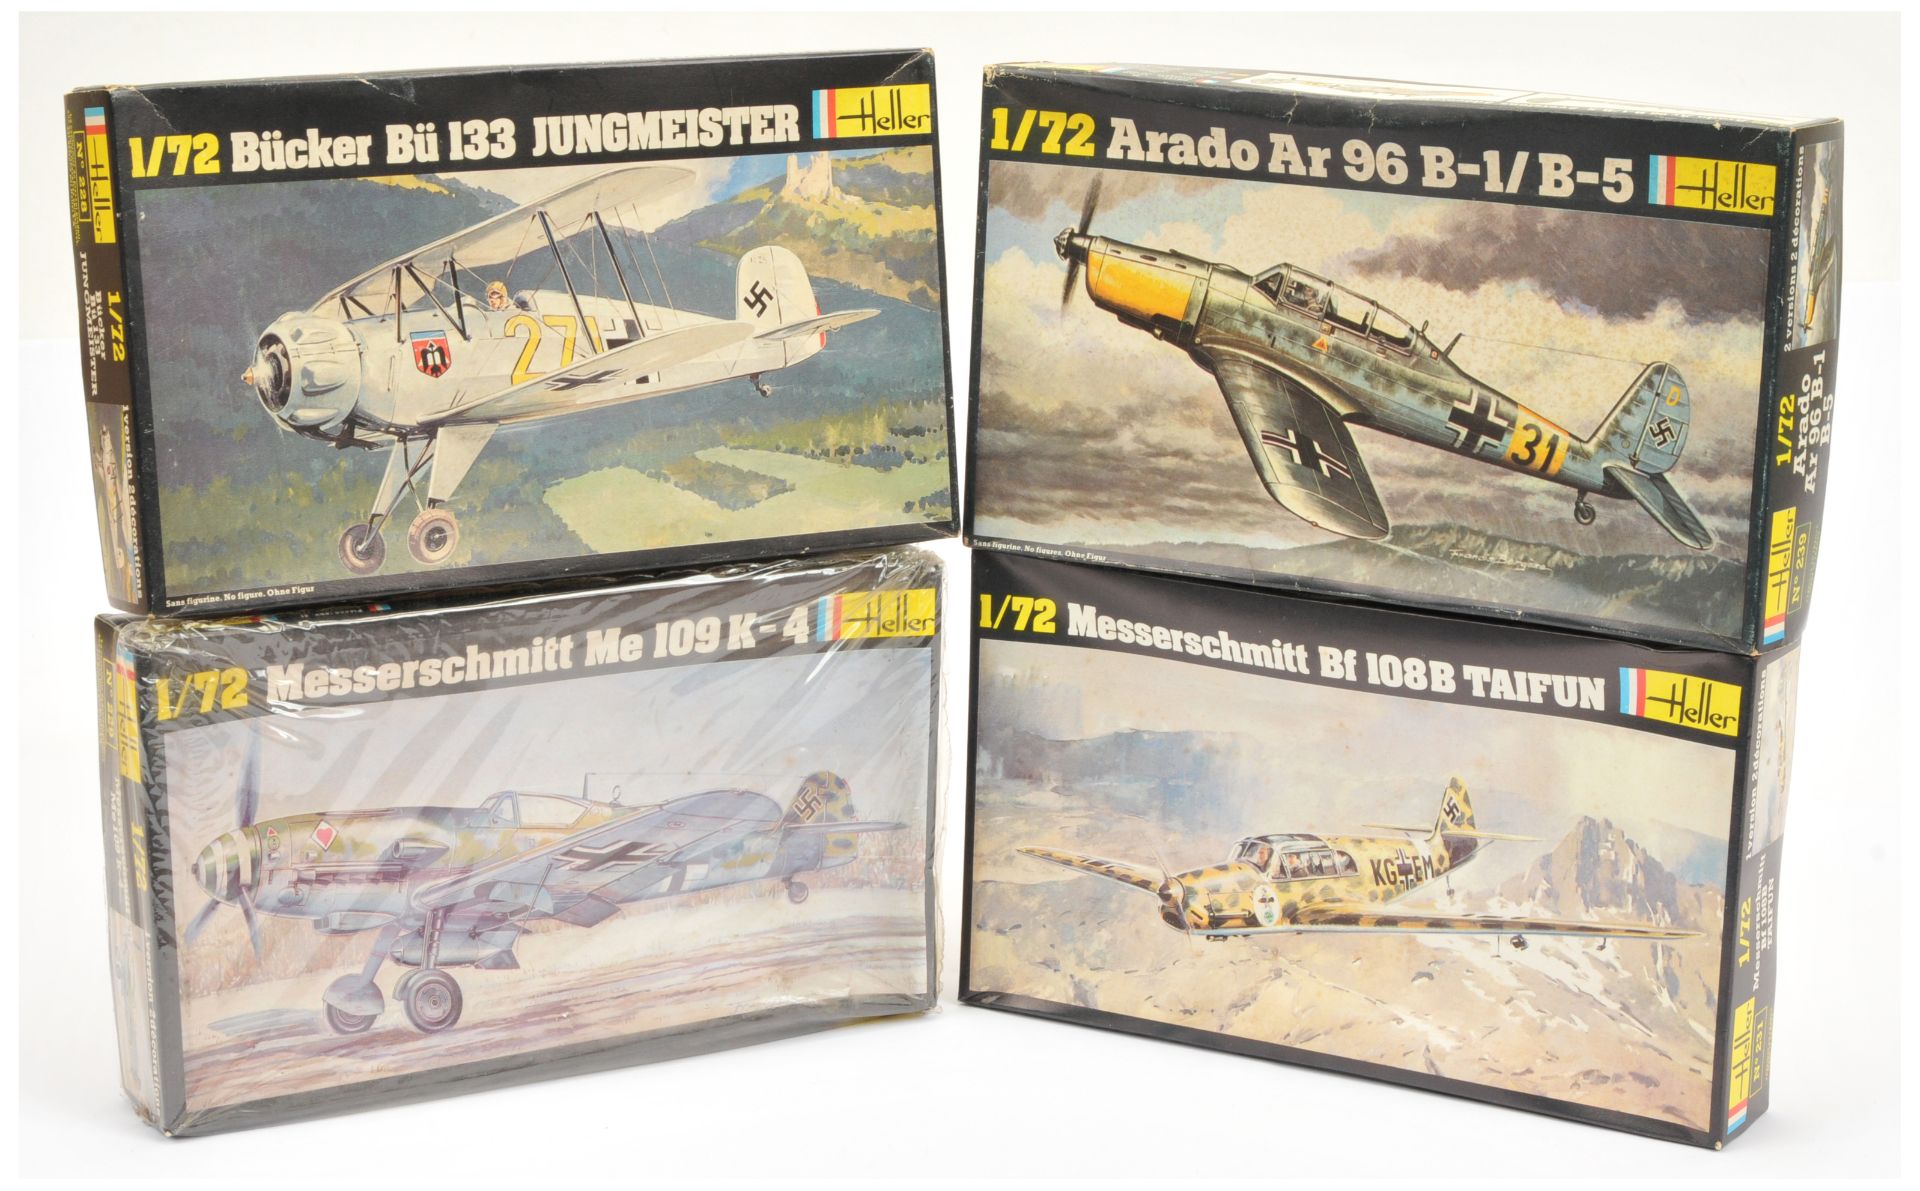 Heller - Group of Model Aircraft Kits